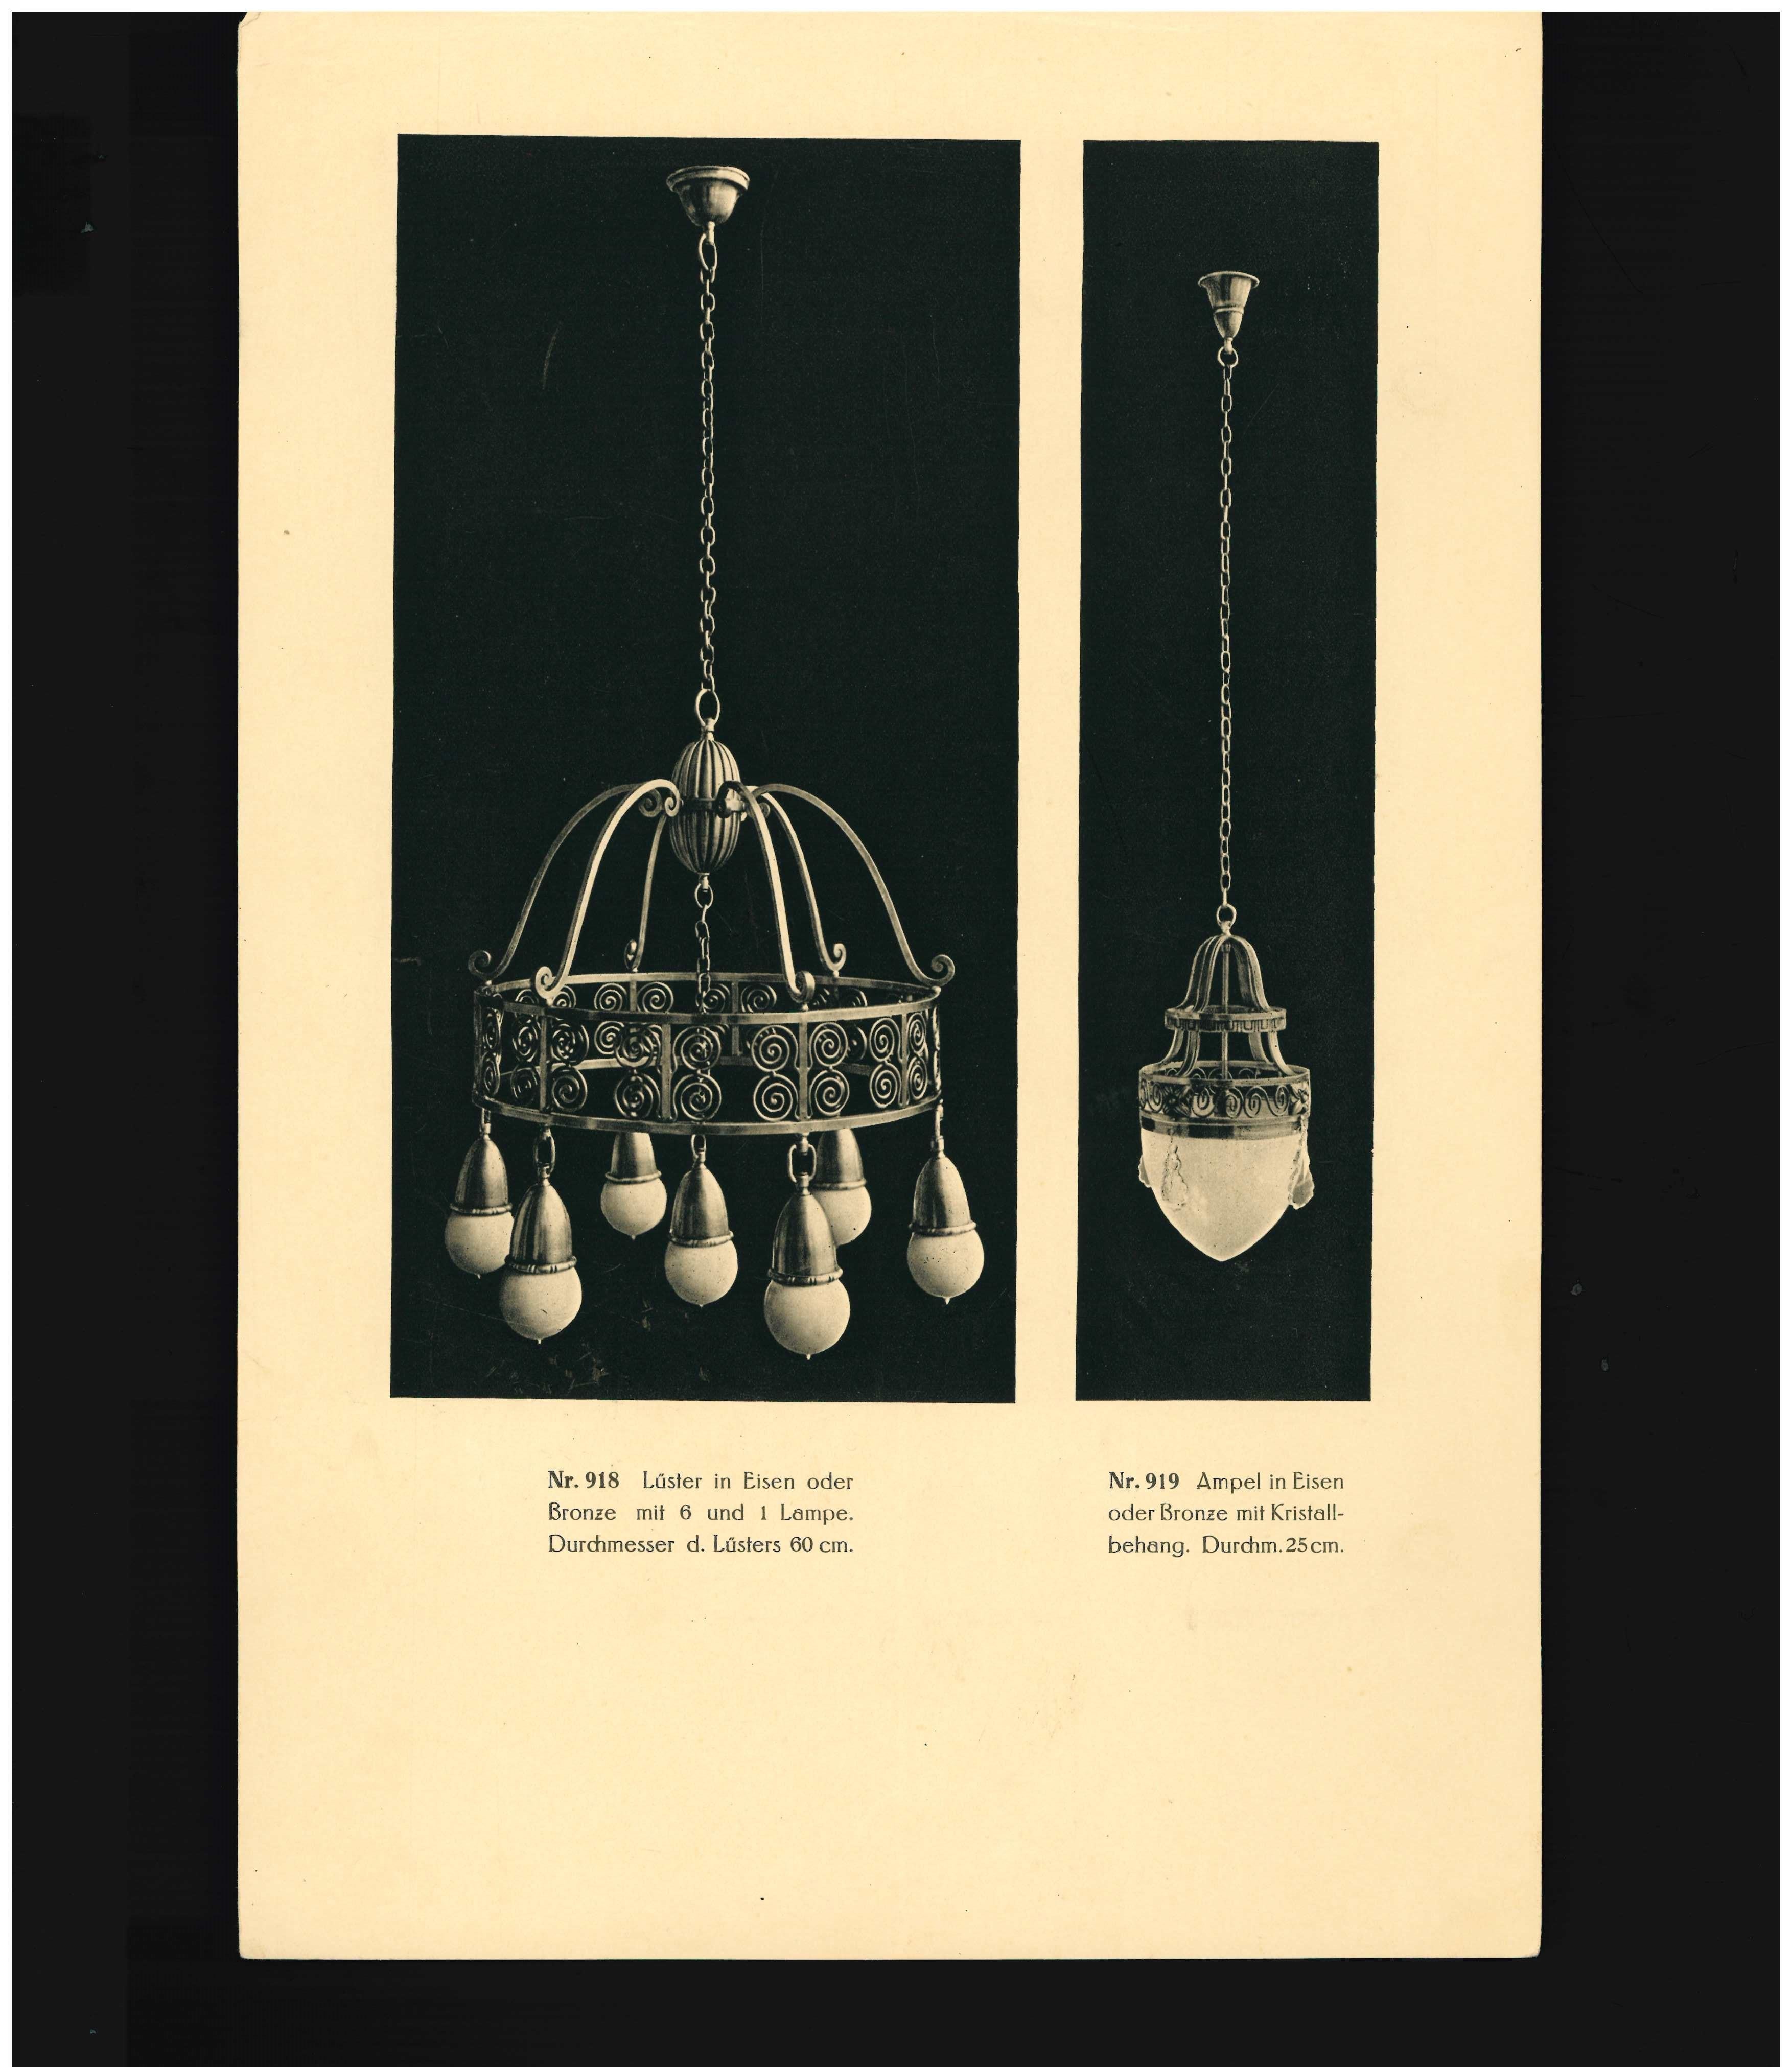 Dies ist ein Katalog aus dem frühen 20. Jahrhundert von der Münchner Beleuchtungsfirma Reinhold Kirsch. Es gibt 45 lose Tafeln, von denen viele mehr als eine Illustration haben. Obwohl es nicht den Werkstätten der Weiner Werkstatte zugeschrieben